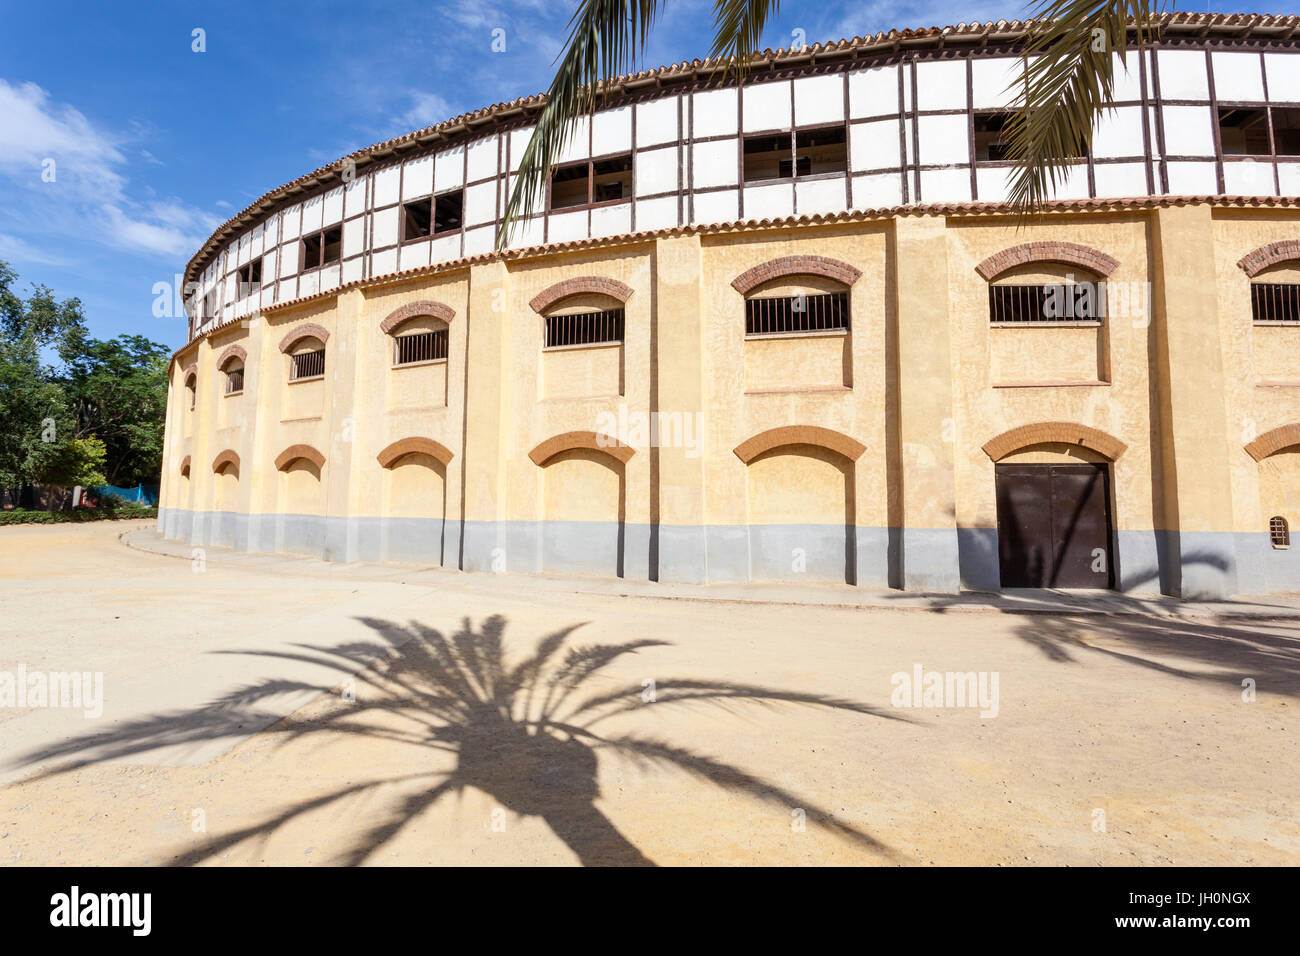 Lorca, Spanien - 29. Mai 2017: Historische Stierkampfarena in der Stadt Lorca. Provinz Murcia, Spanien Stockfoto